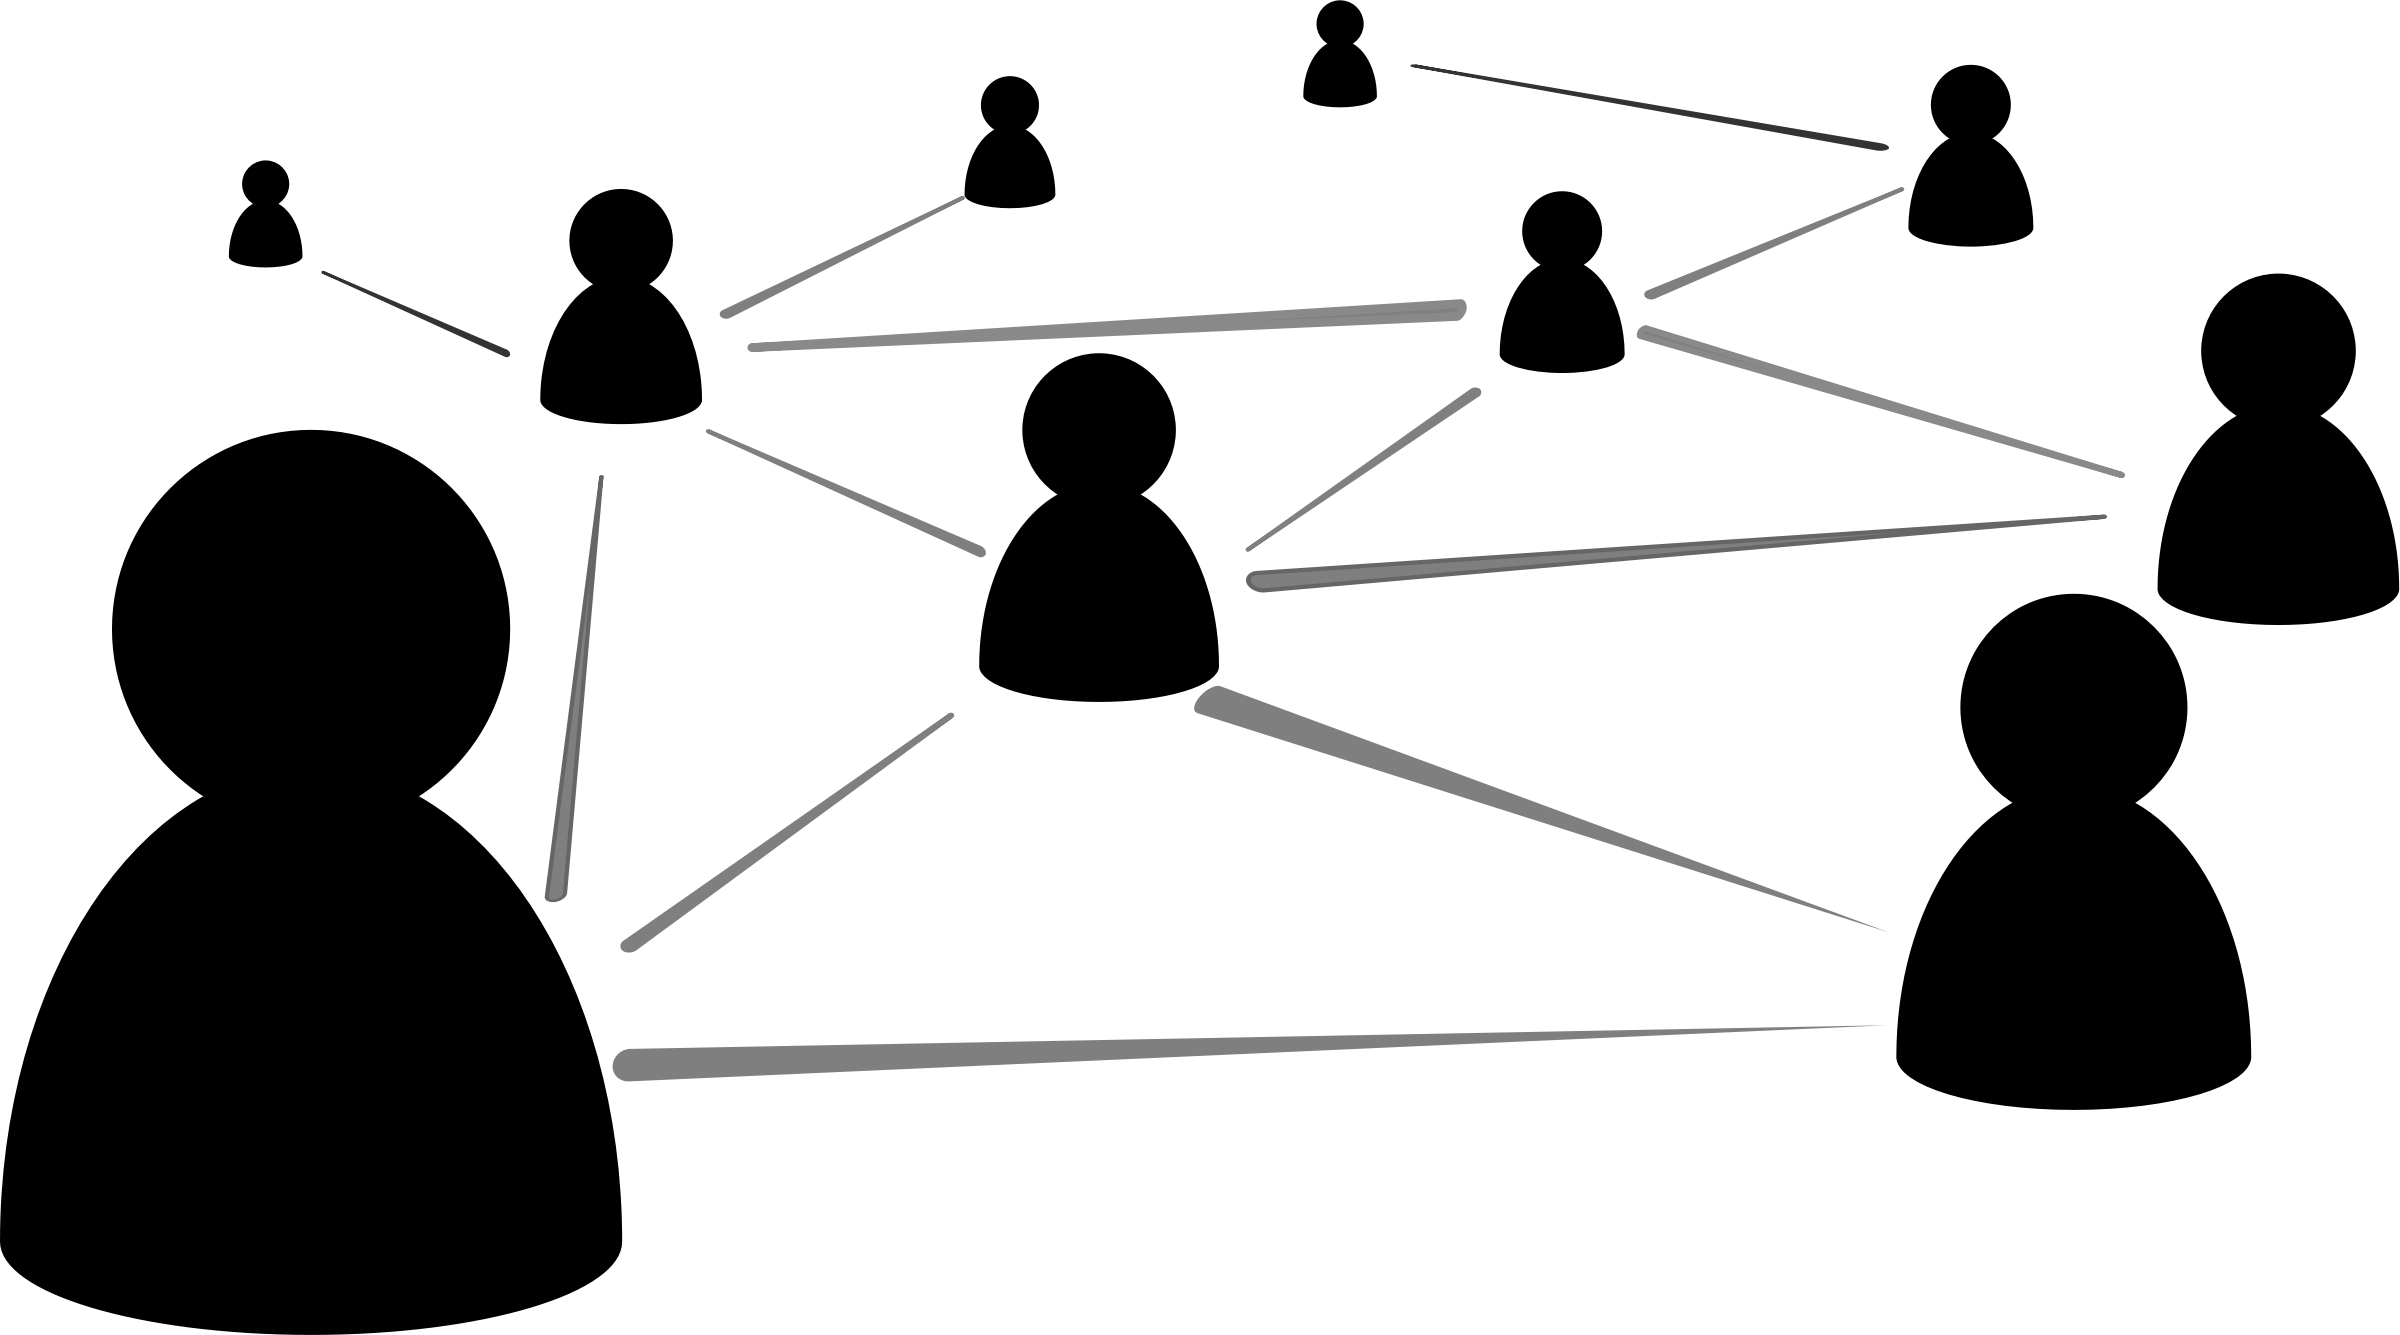 Network clipart network icon, Network network icon ... 7 round wire diagram 